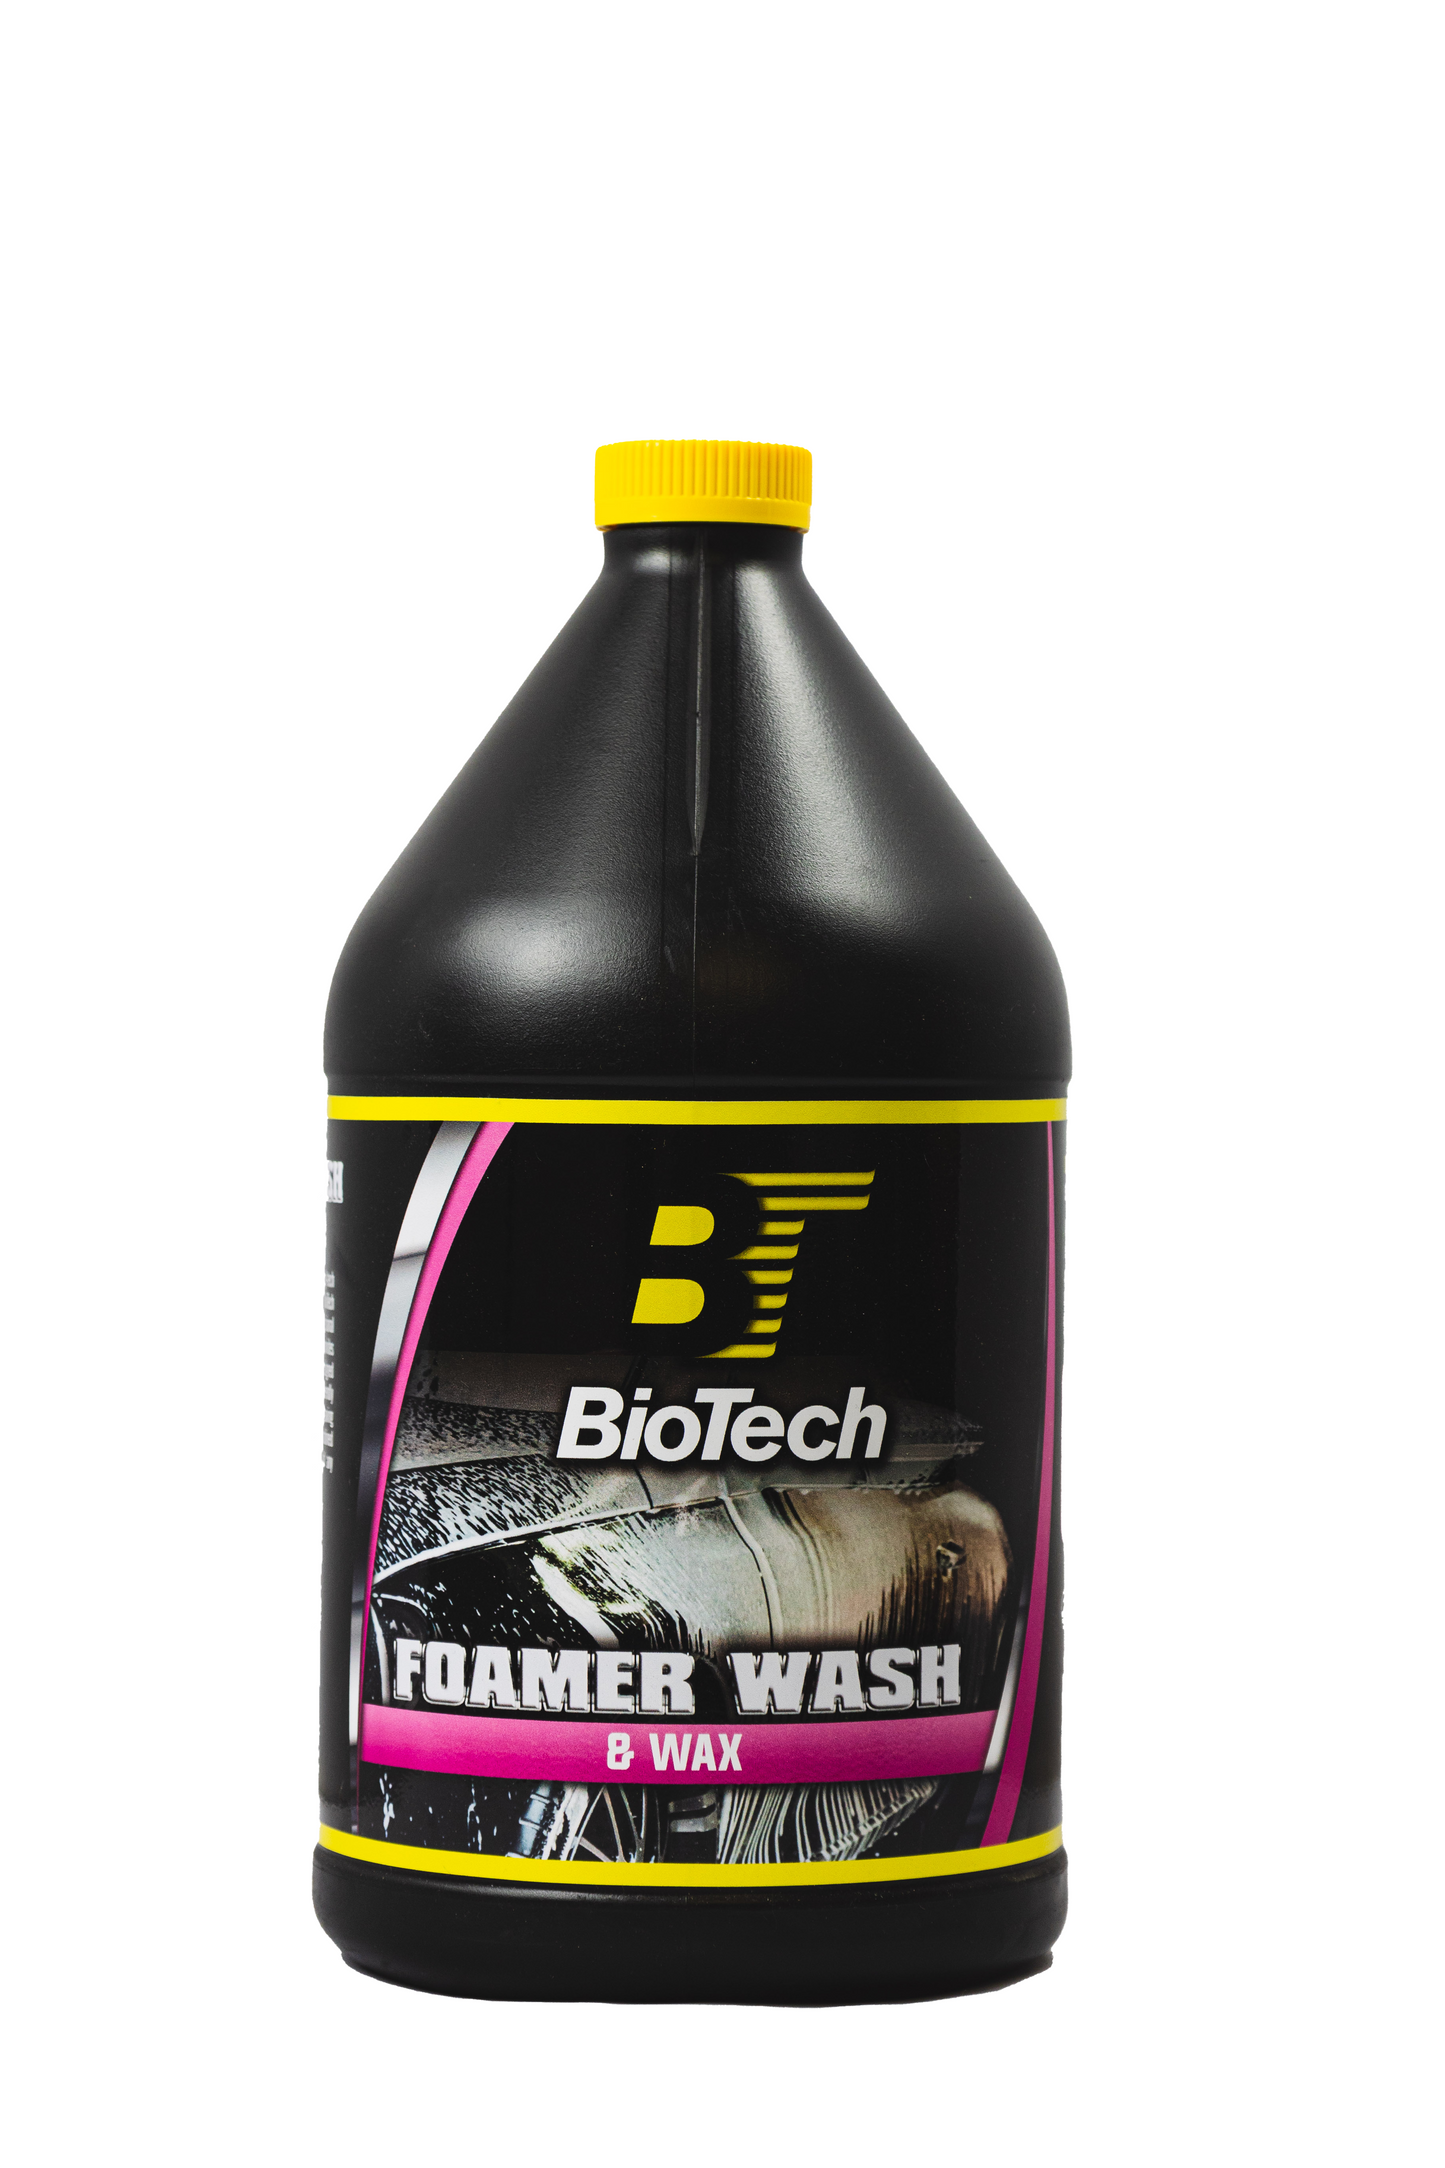 Biotech Foamer Wash and Wax